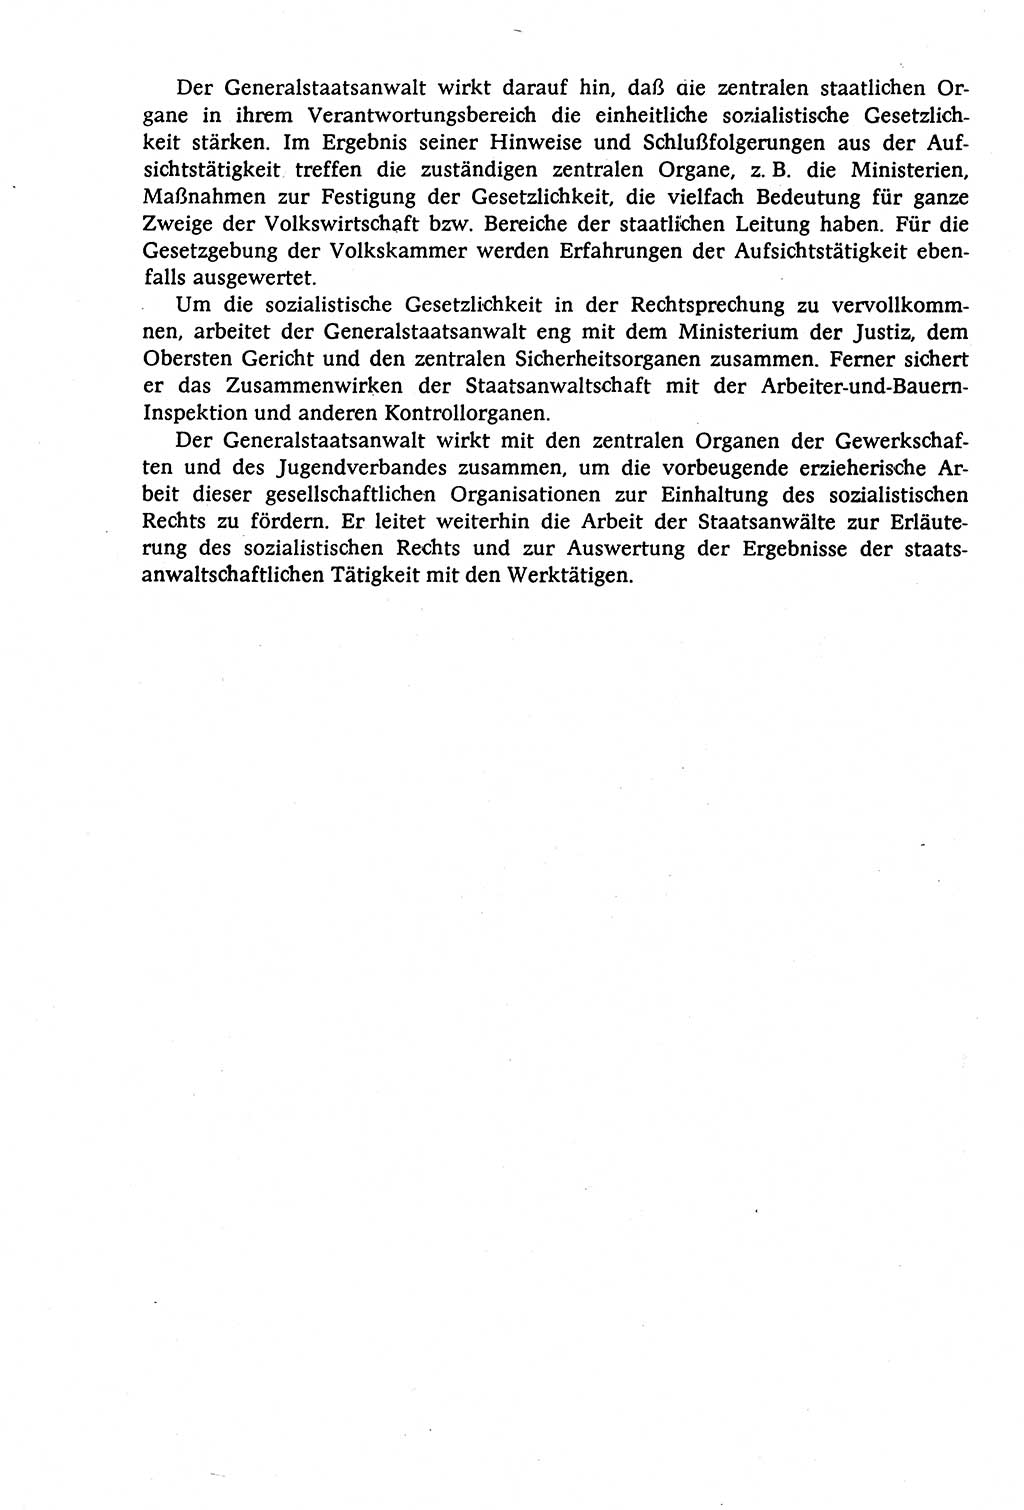 Staatsrecht der DDR (Deutsche Demokratische Republik), Lehrbuch 1977, Seite 392 (St.-R. DDR Lb. 1977, S. 392)